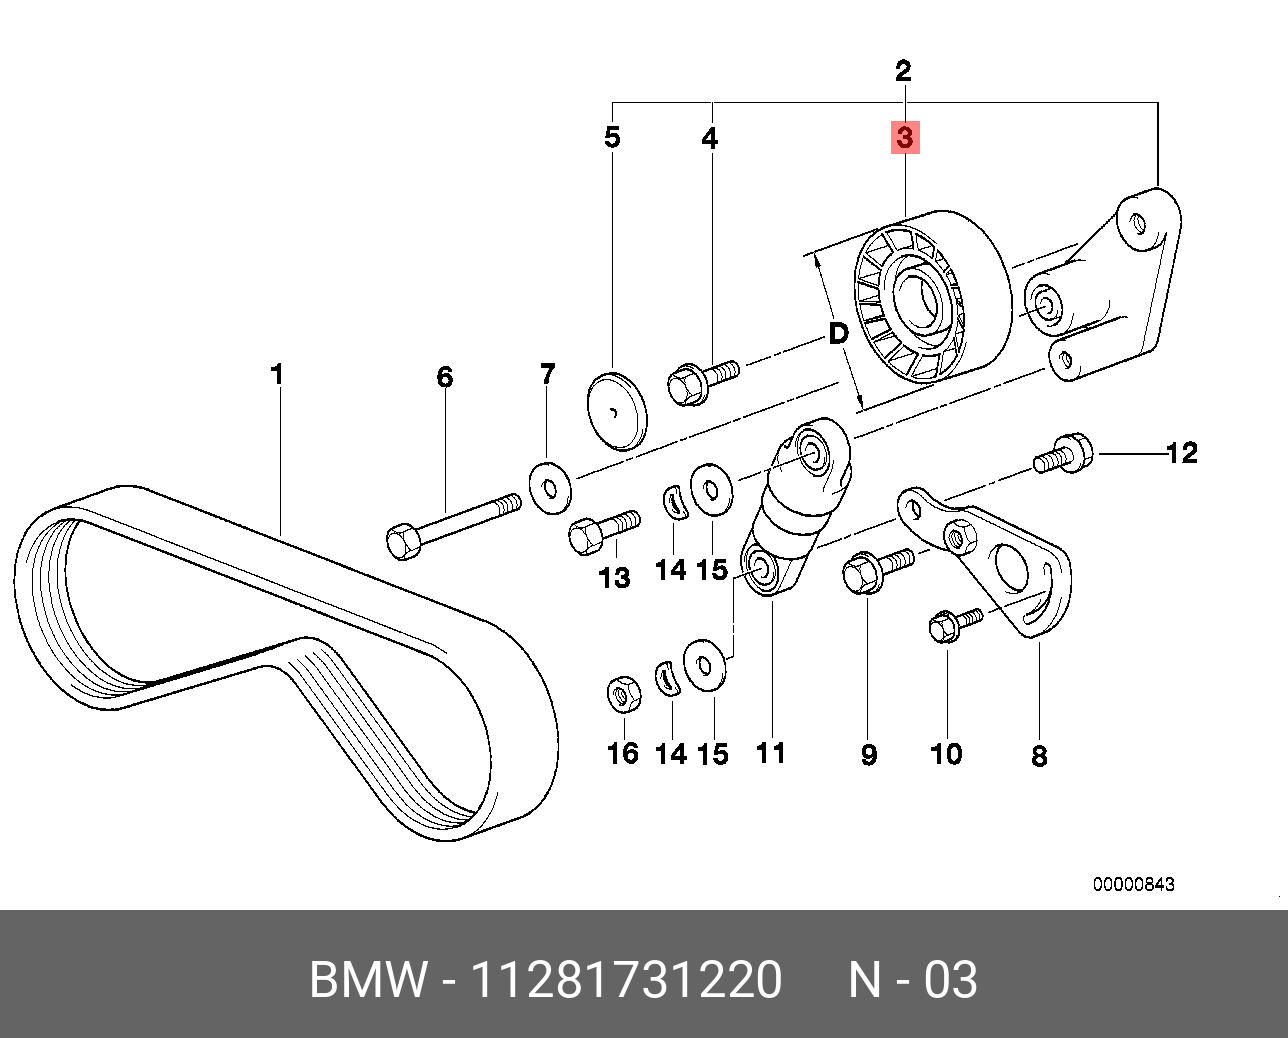 Ролик натяжной навесного оборудования - BMW 11 28 1 731 220